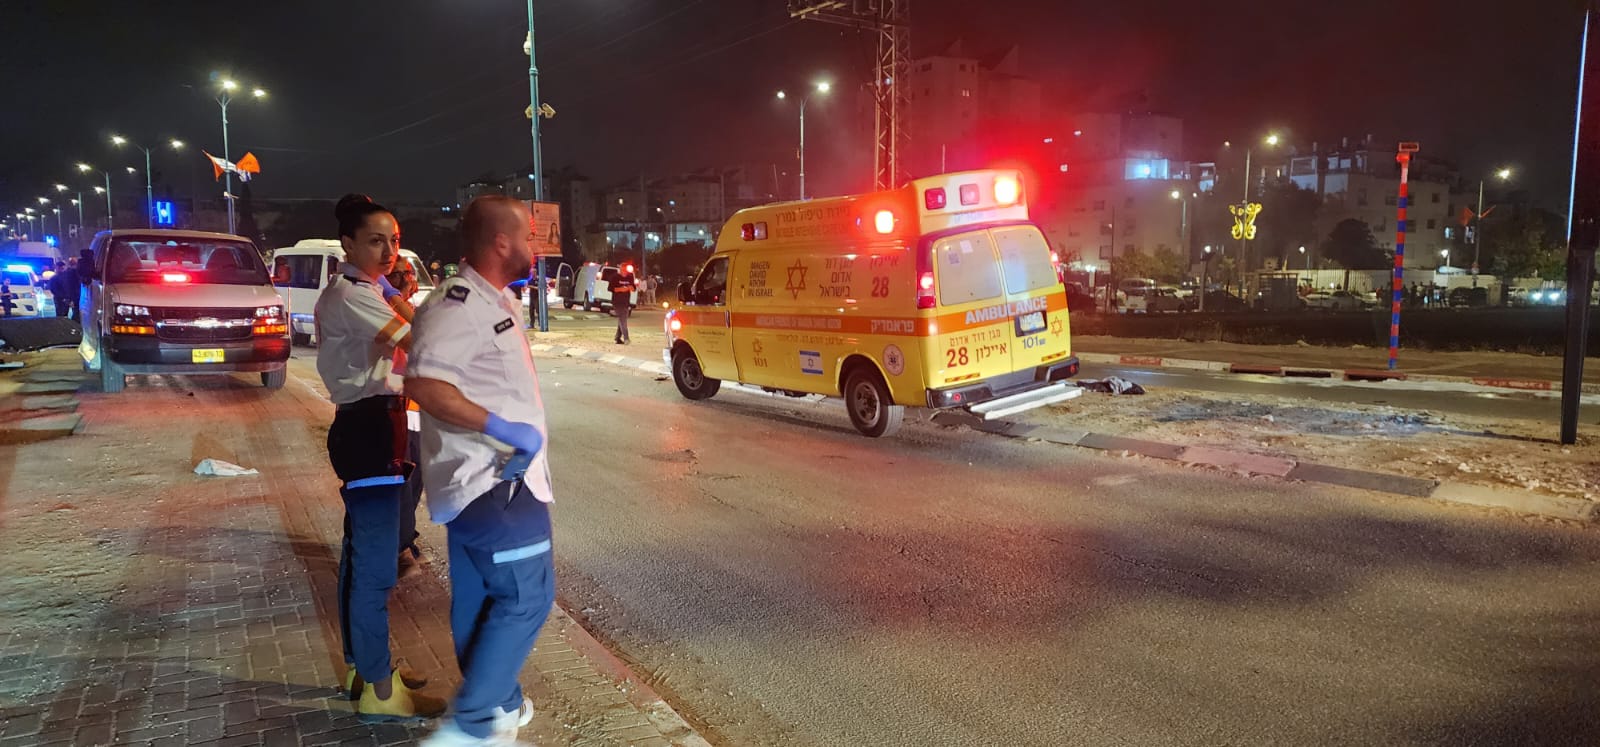 اللد: اصابة خطرة لرجلين بانفجار مركبة في المدينة